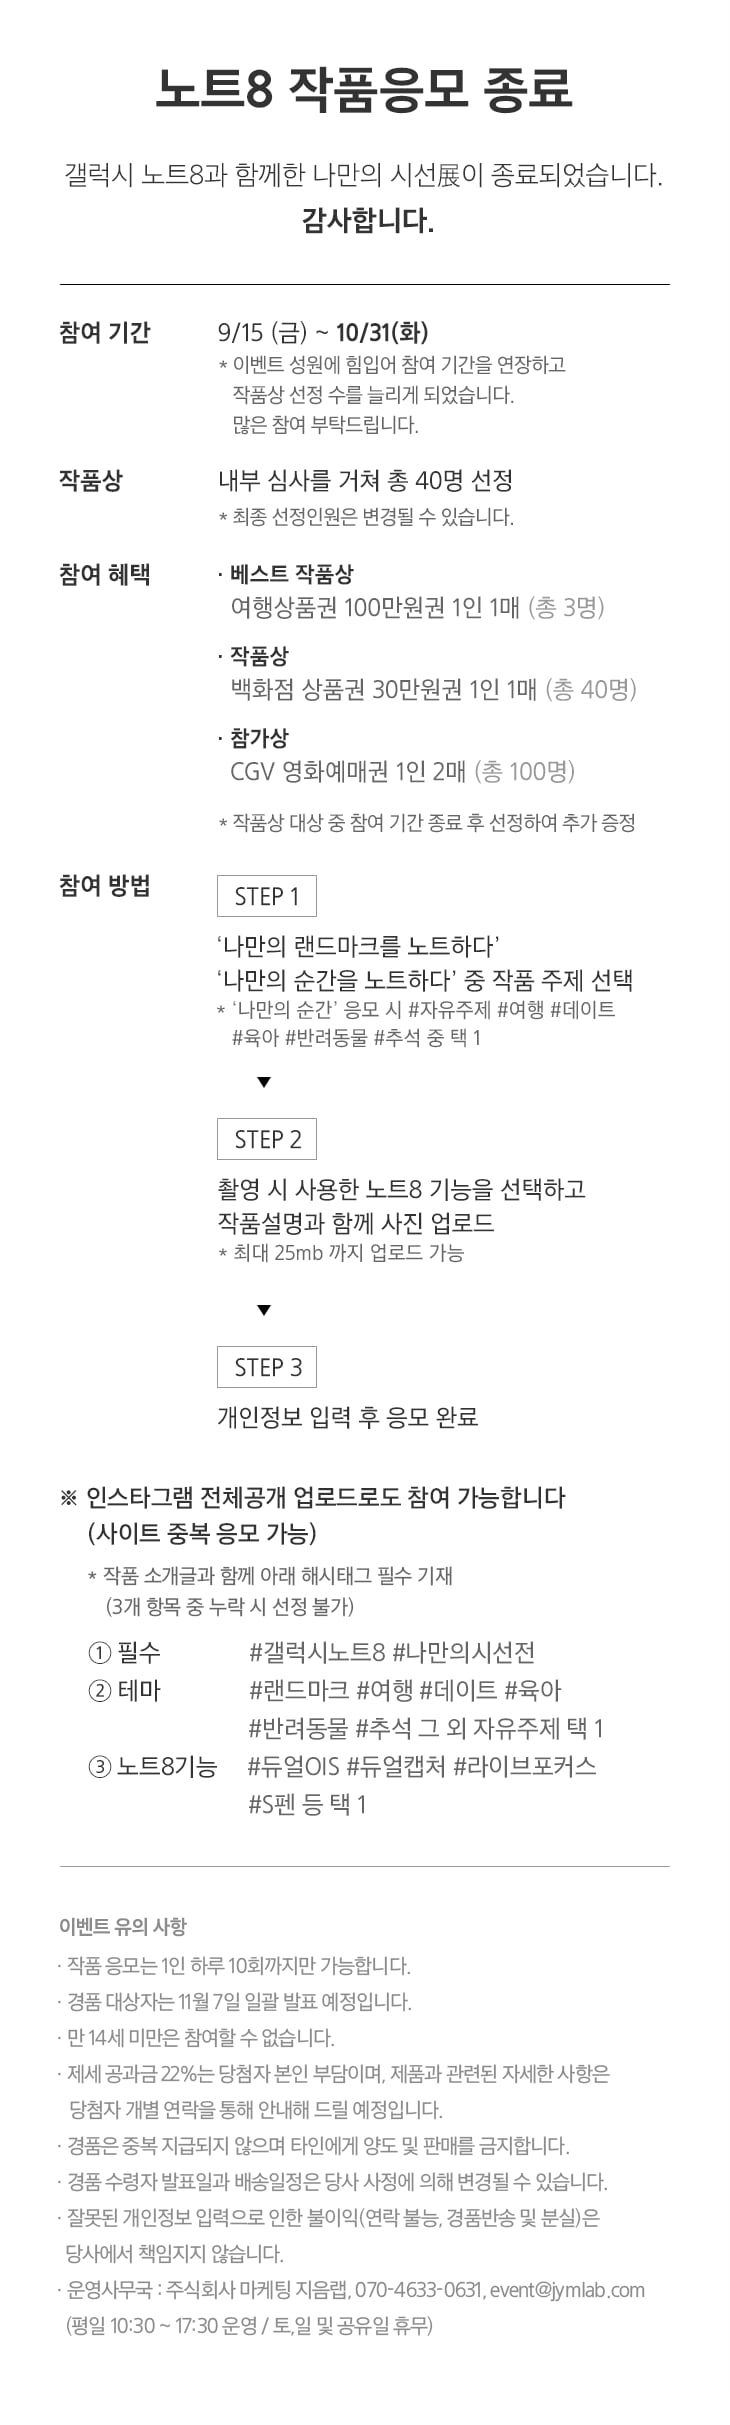 갤럭시 노트8 나만의 시선展 | Samsung 대한민국